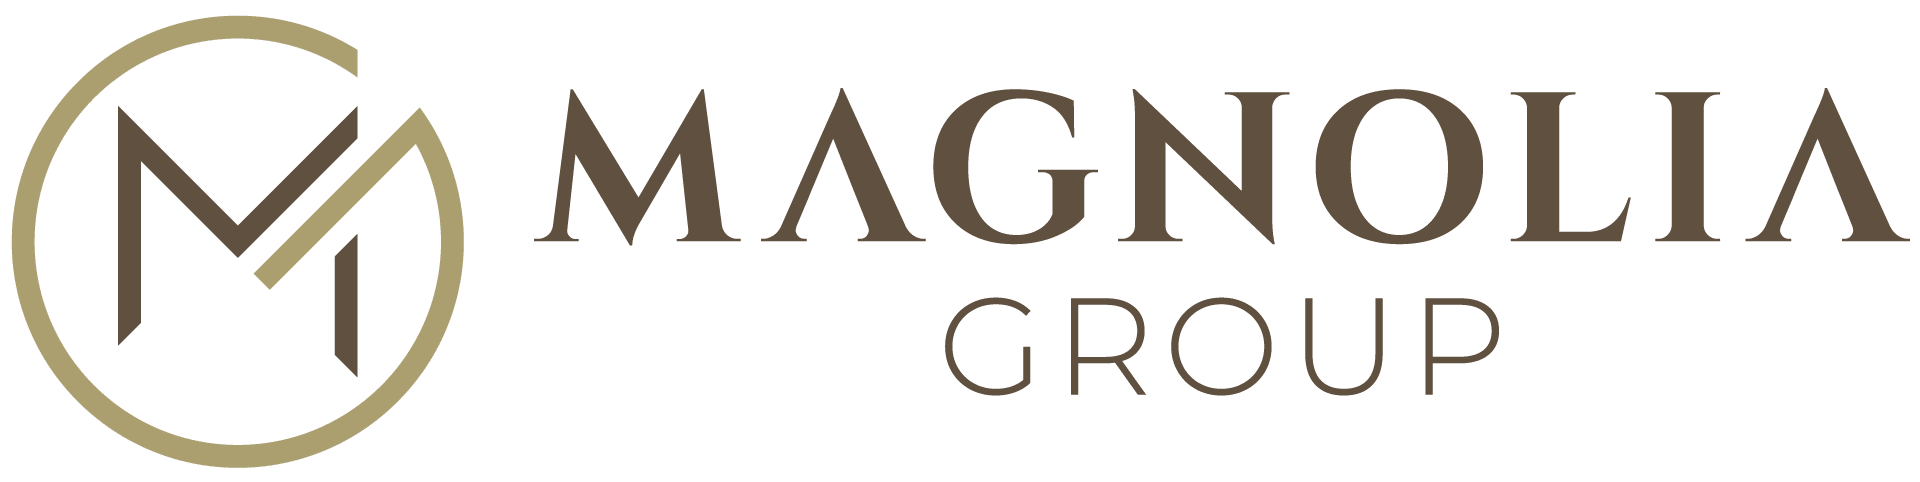 brand azienda magnolia group